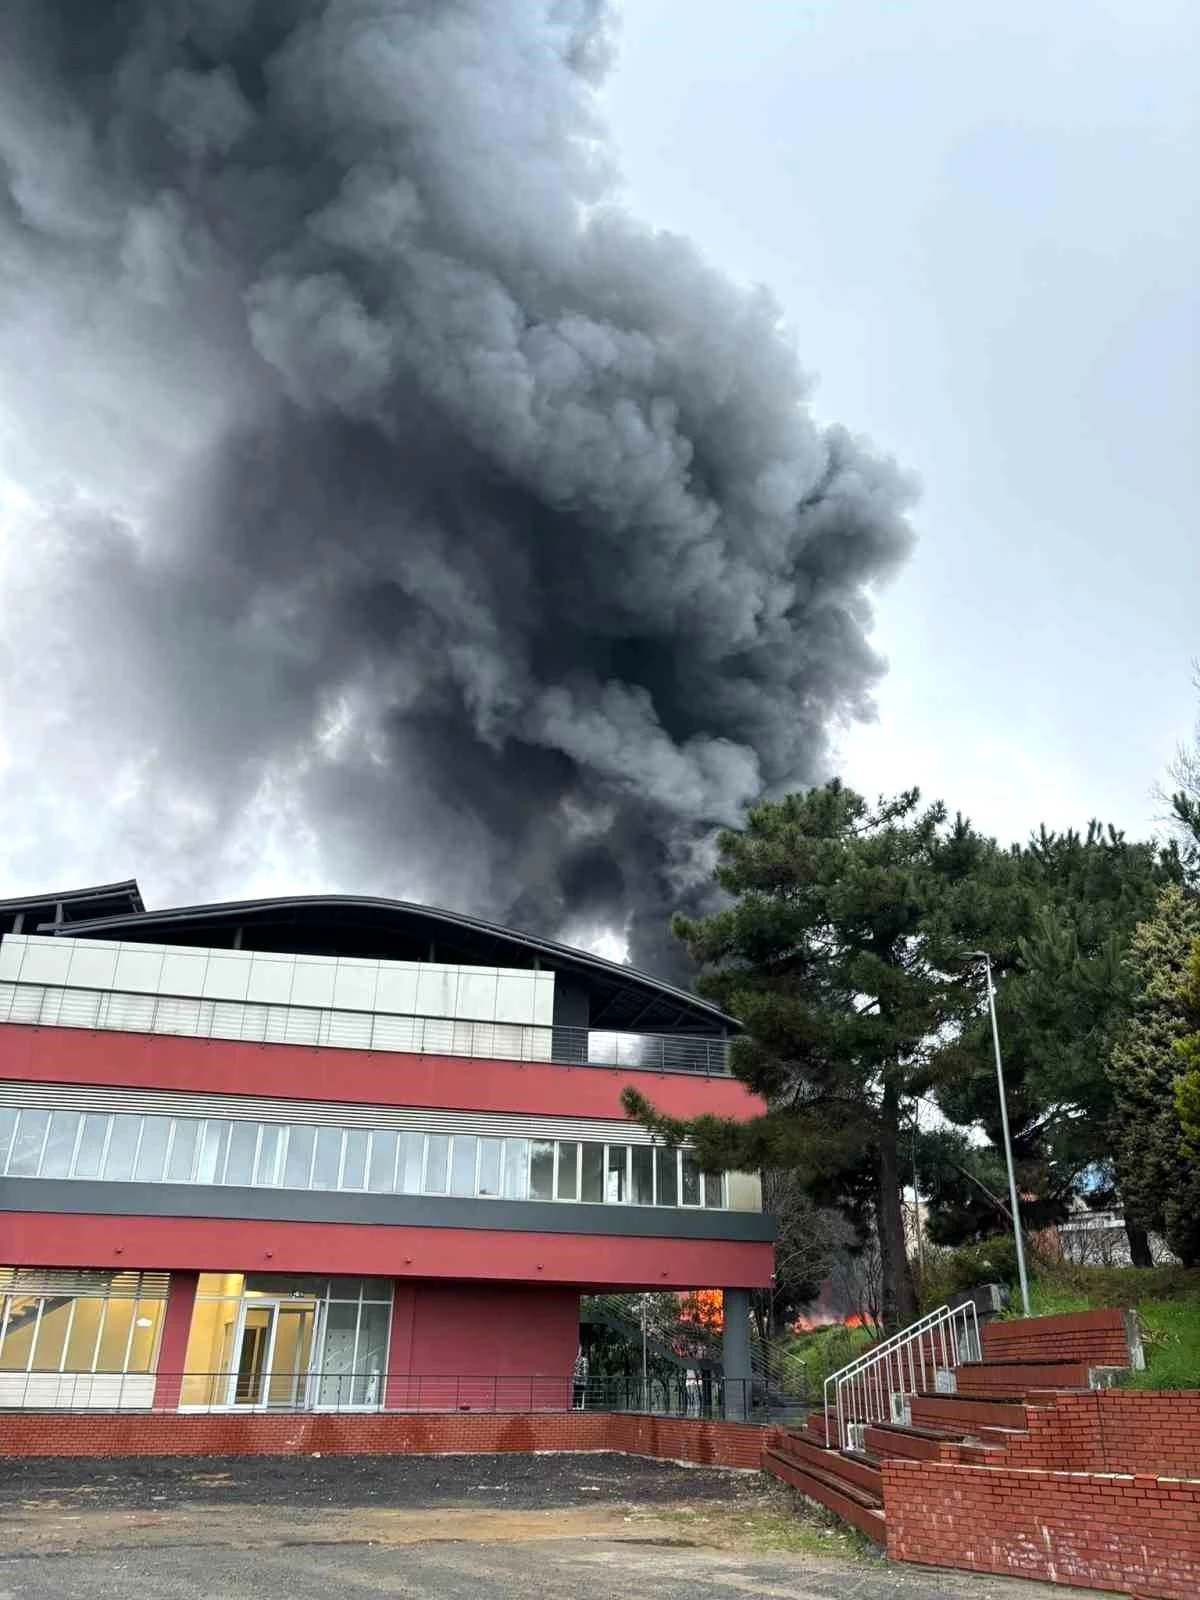 İTÜ Maslak Kampüsünde İnşaat Alanında Yangın Çıktı